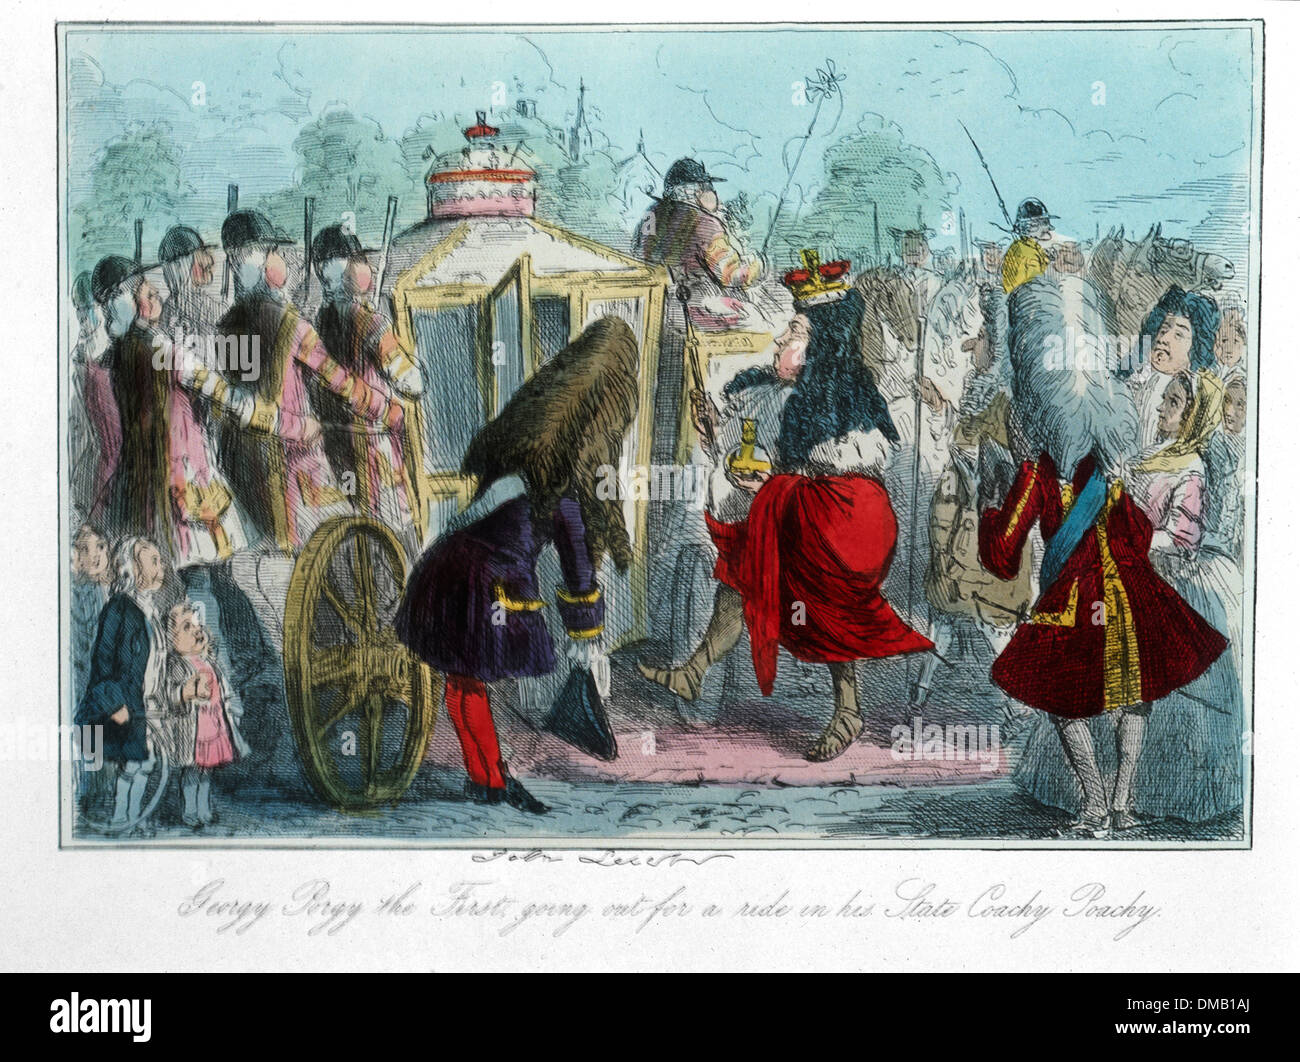 Georgy Porgy prima di andare fuori a fare un giro nel suo stato Coachy Poachy, fumetti storia dell'Inghilterra, attacco da John Leech, 1850 Foto Stock